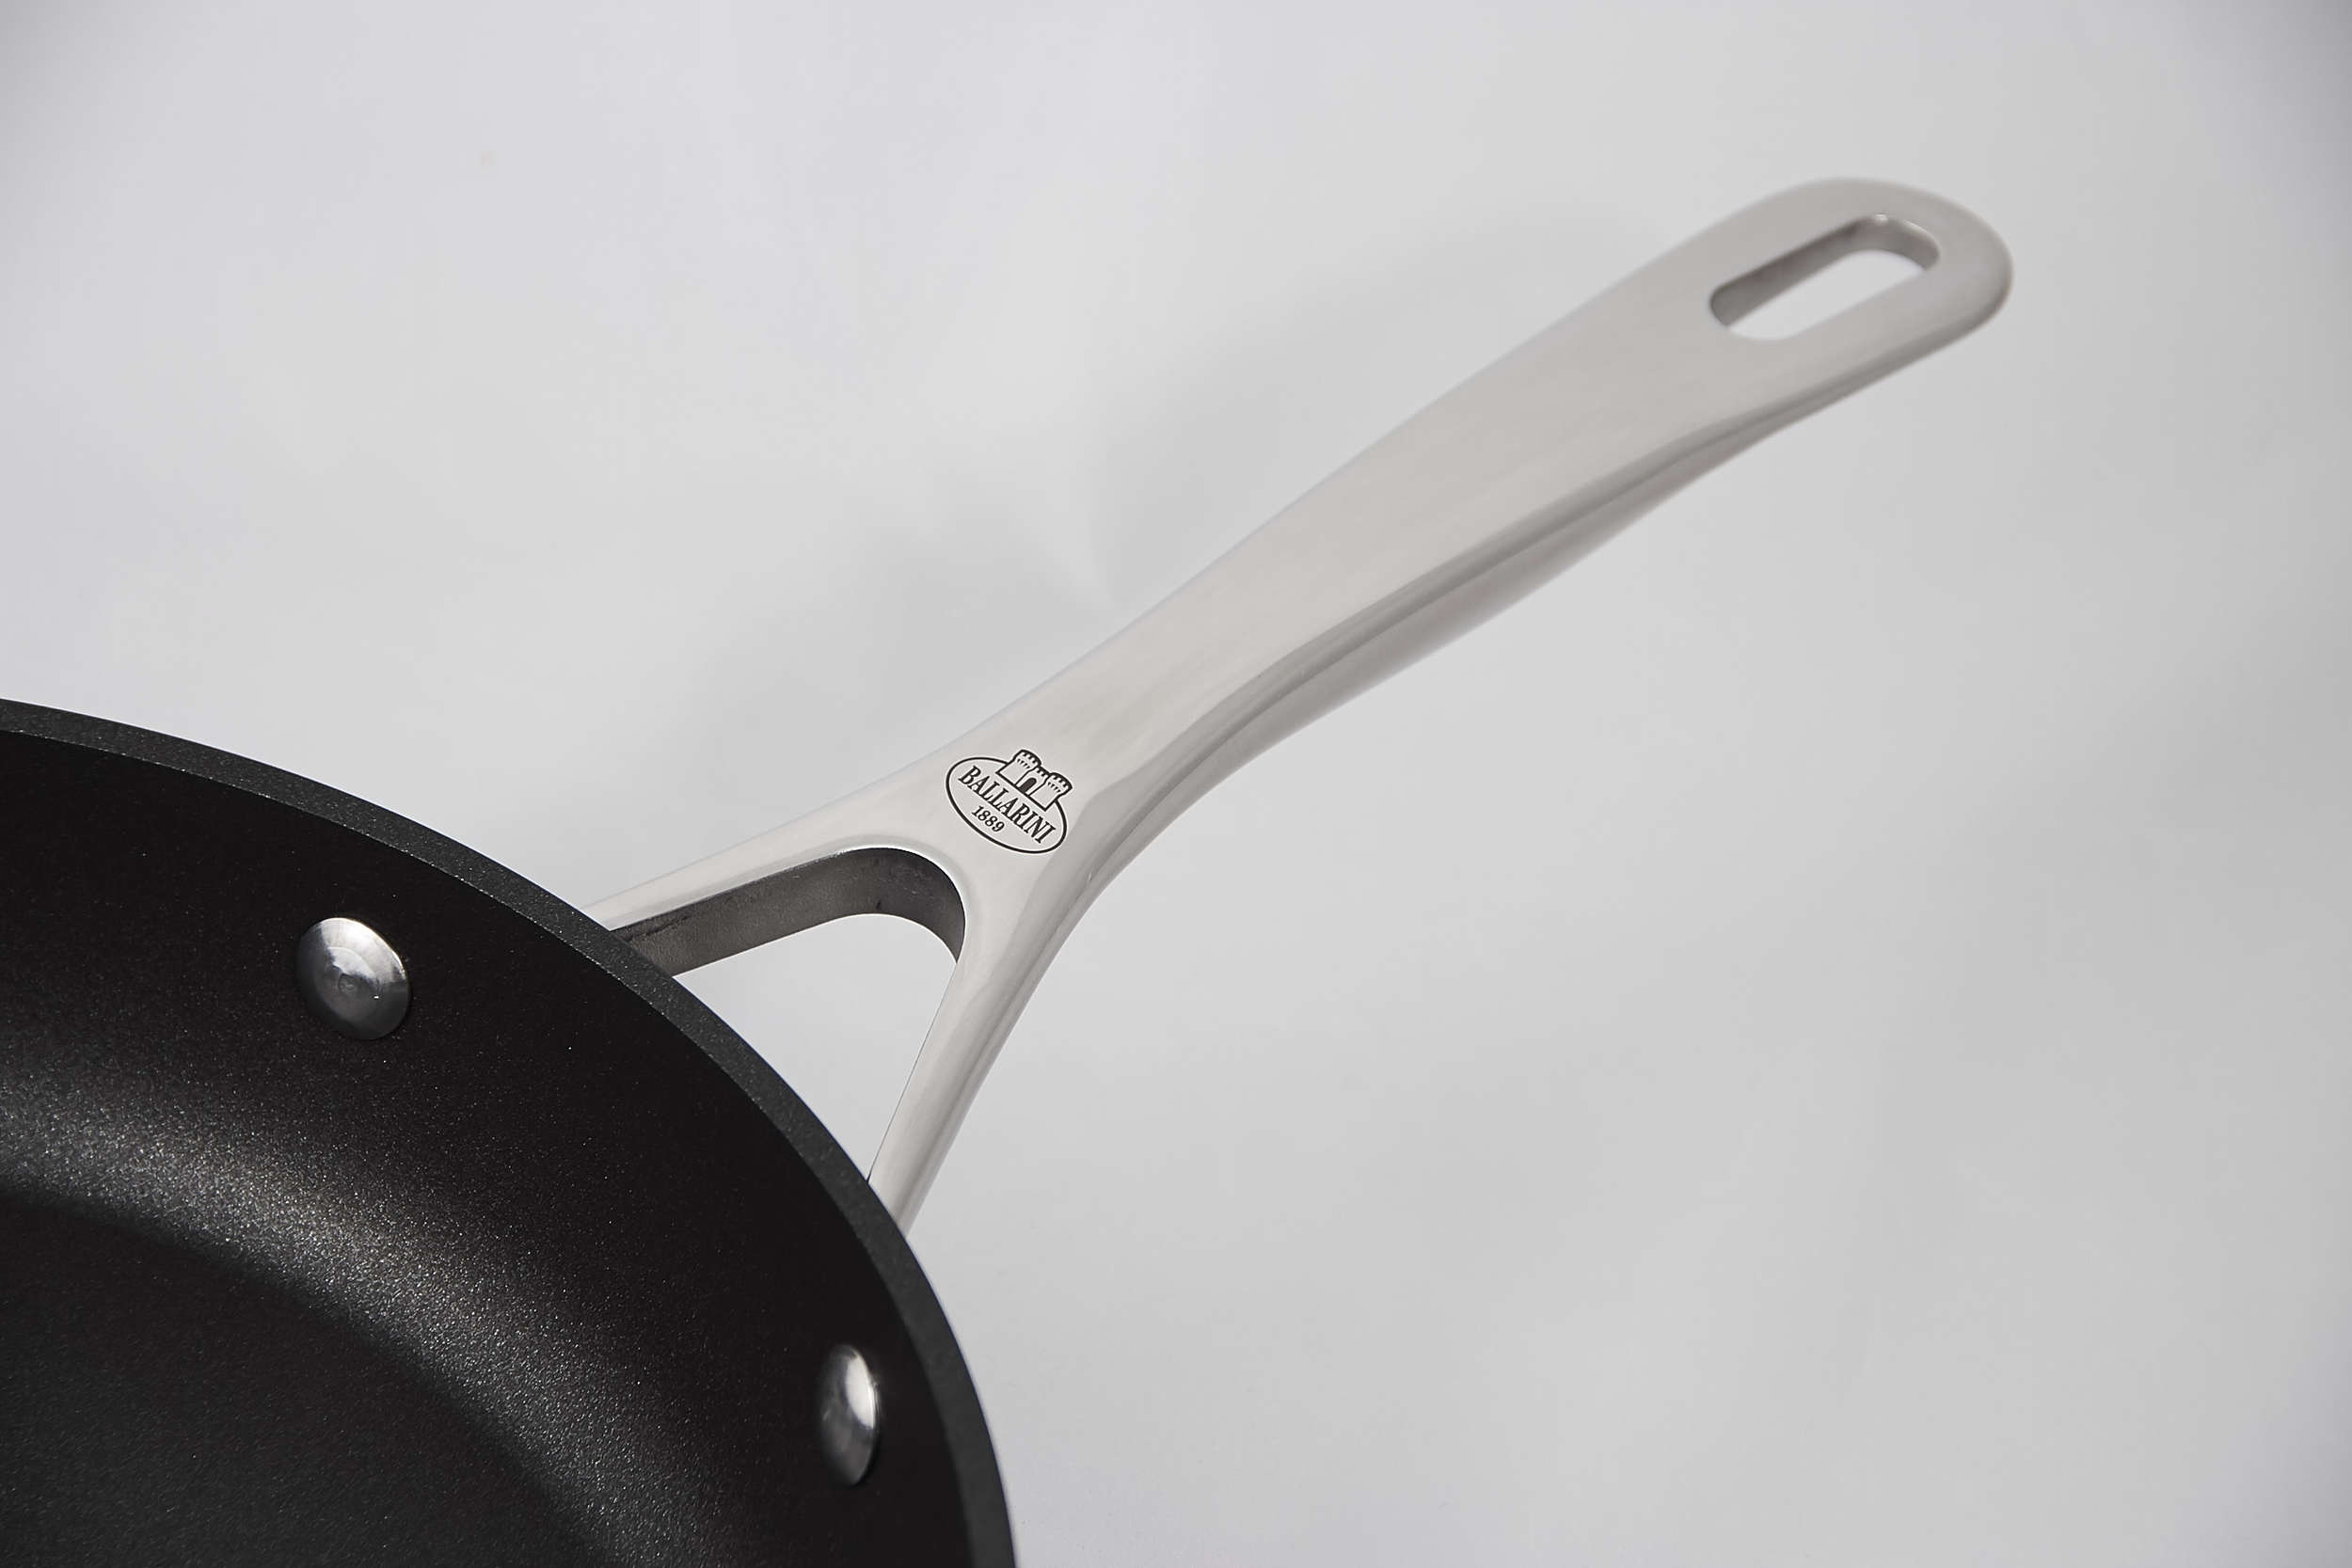 Aluminium-Titanium Frying Pan with Keravis Coating